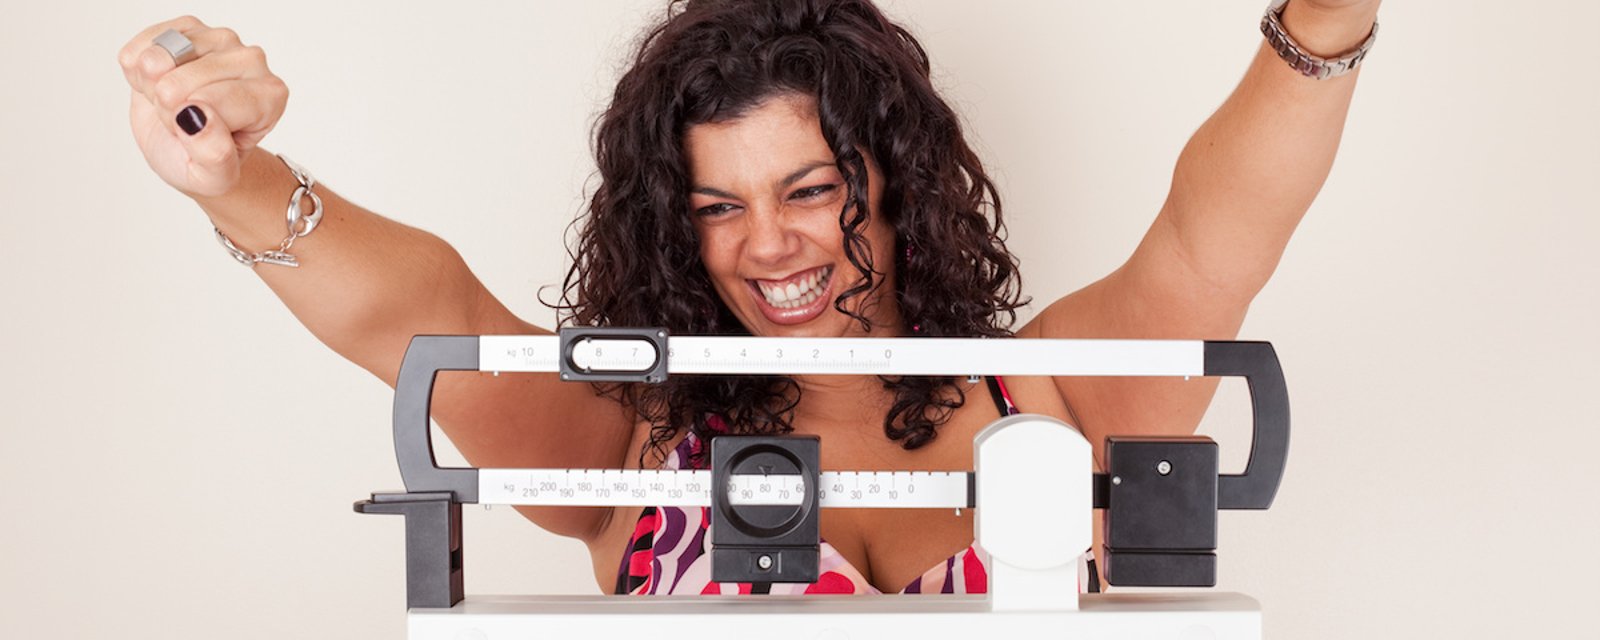 Des scientifiques ont défini 2 principes inusités qui permettraient de perdre du poids sans effort